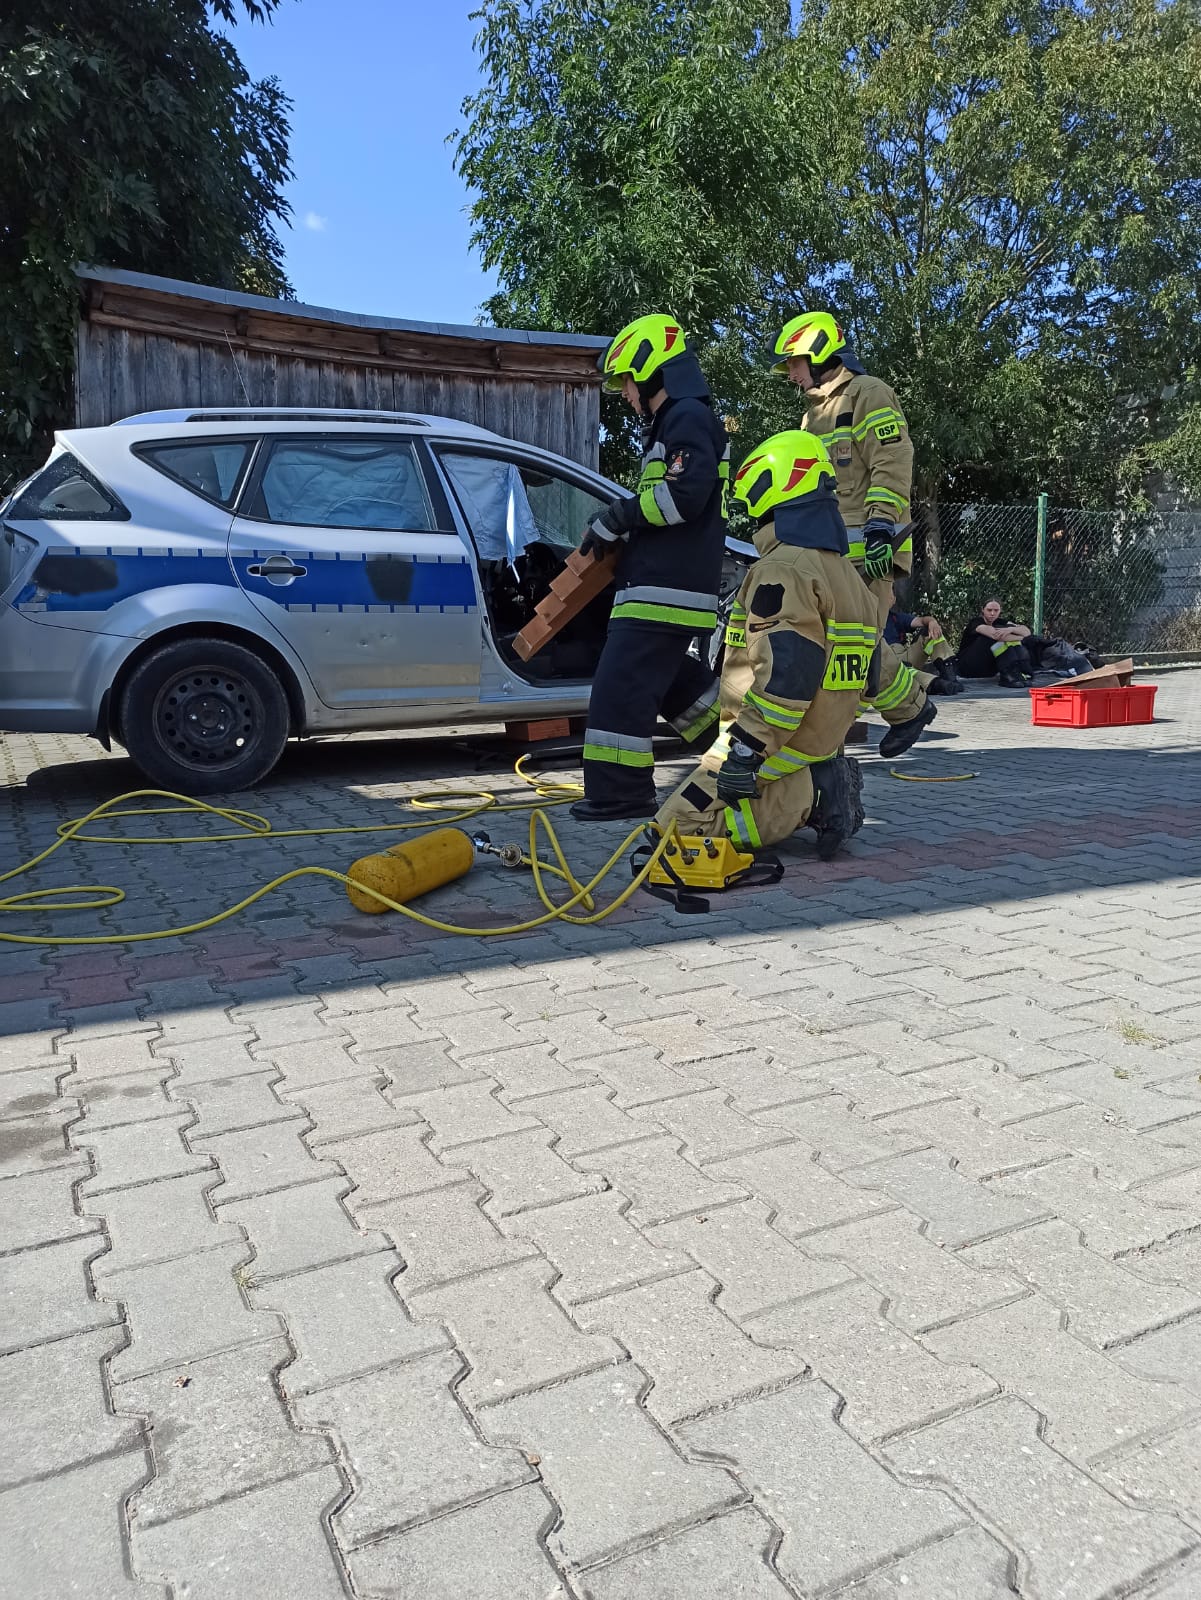 Trzech strażaków ubranych w ubrania specjalne ćwiczą przy wraku samochodu policyjnego używając zestawów pneumatycznych.